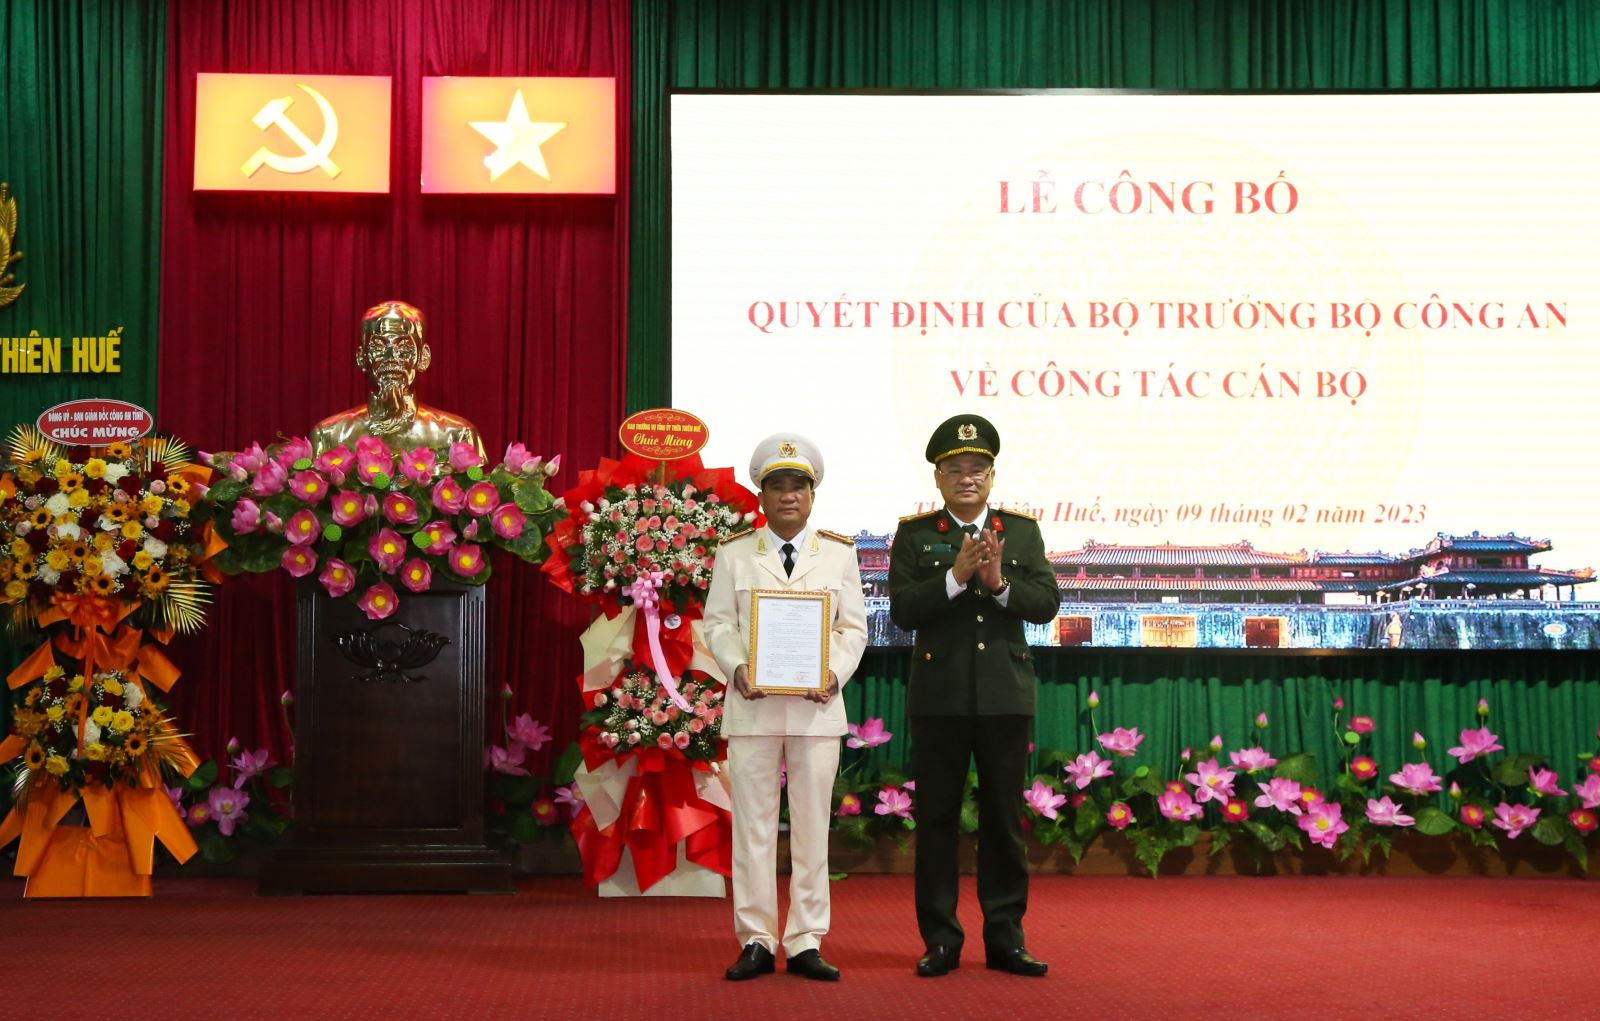 Đại tá Nguyễn Thanh Tuấn, Giám đốc Công an tỉnh đã trao quyết định bổ nhiệm Thượng tá Hồ Xuân Phương.